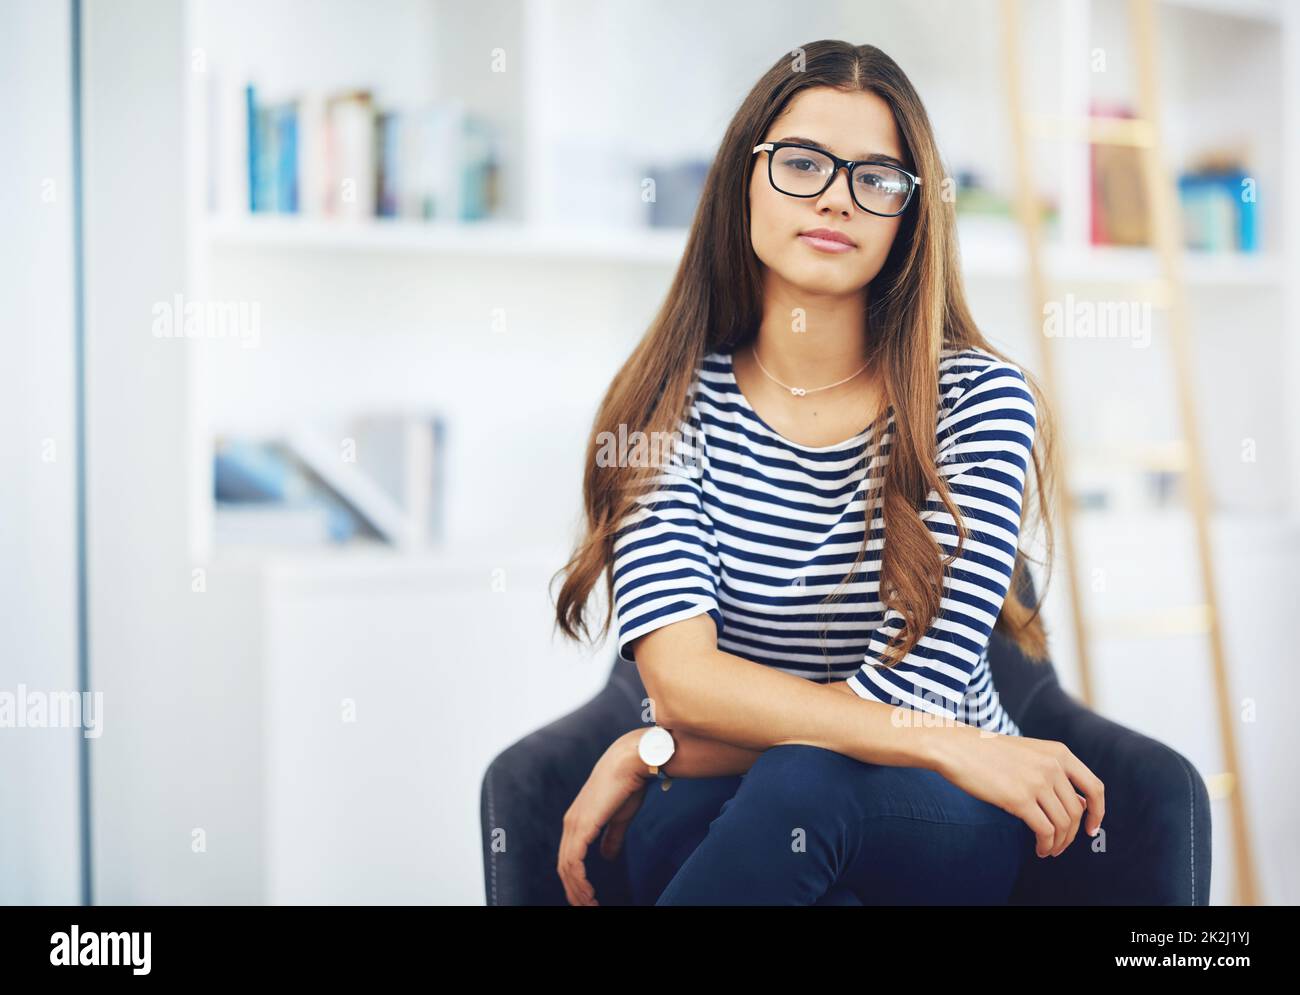 Shes voller Selbstvertrauen. Porträt einer lächelnden jungen Frau mit Brille, die zu Hause vor Bücherregalen sitzt. Stockfoto